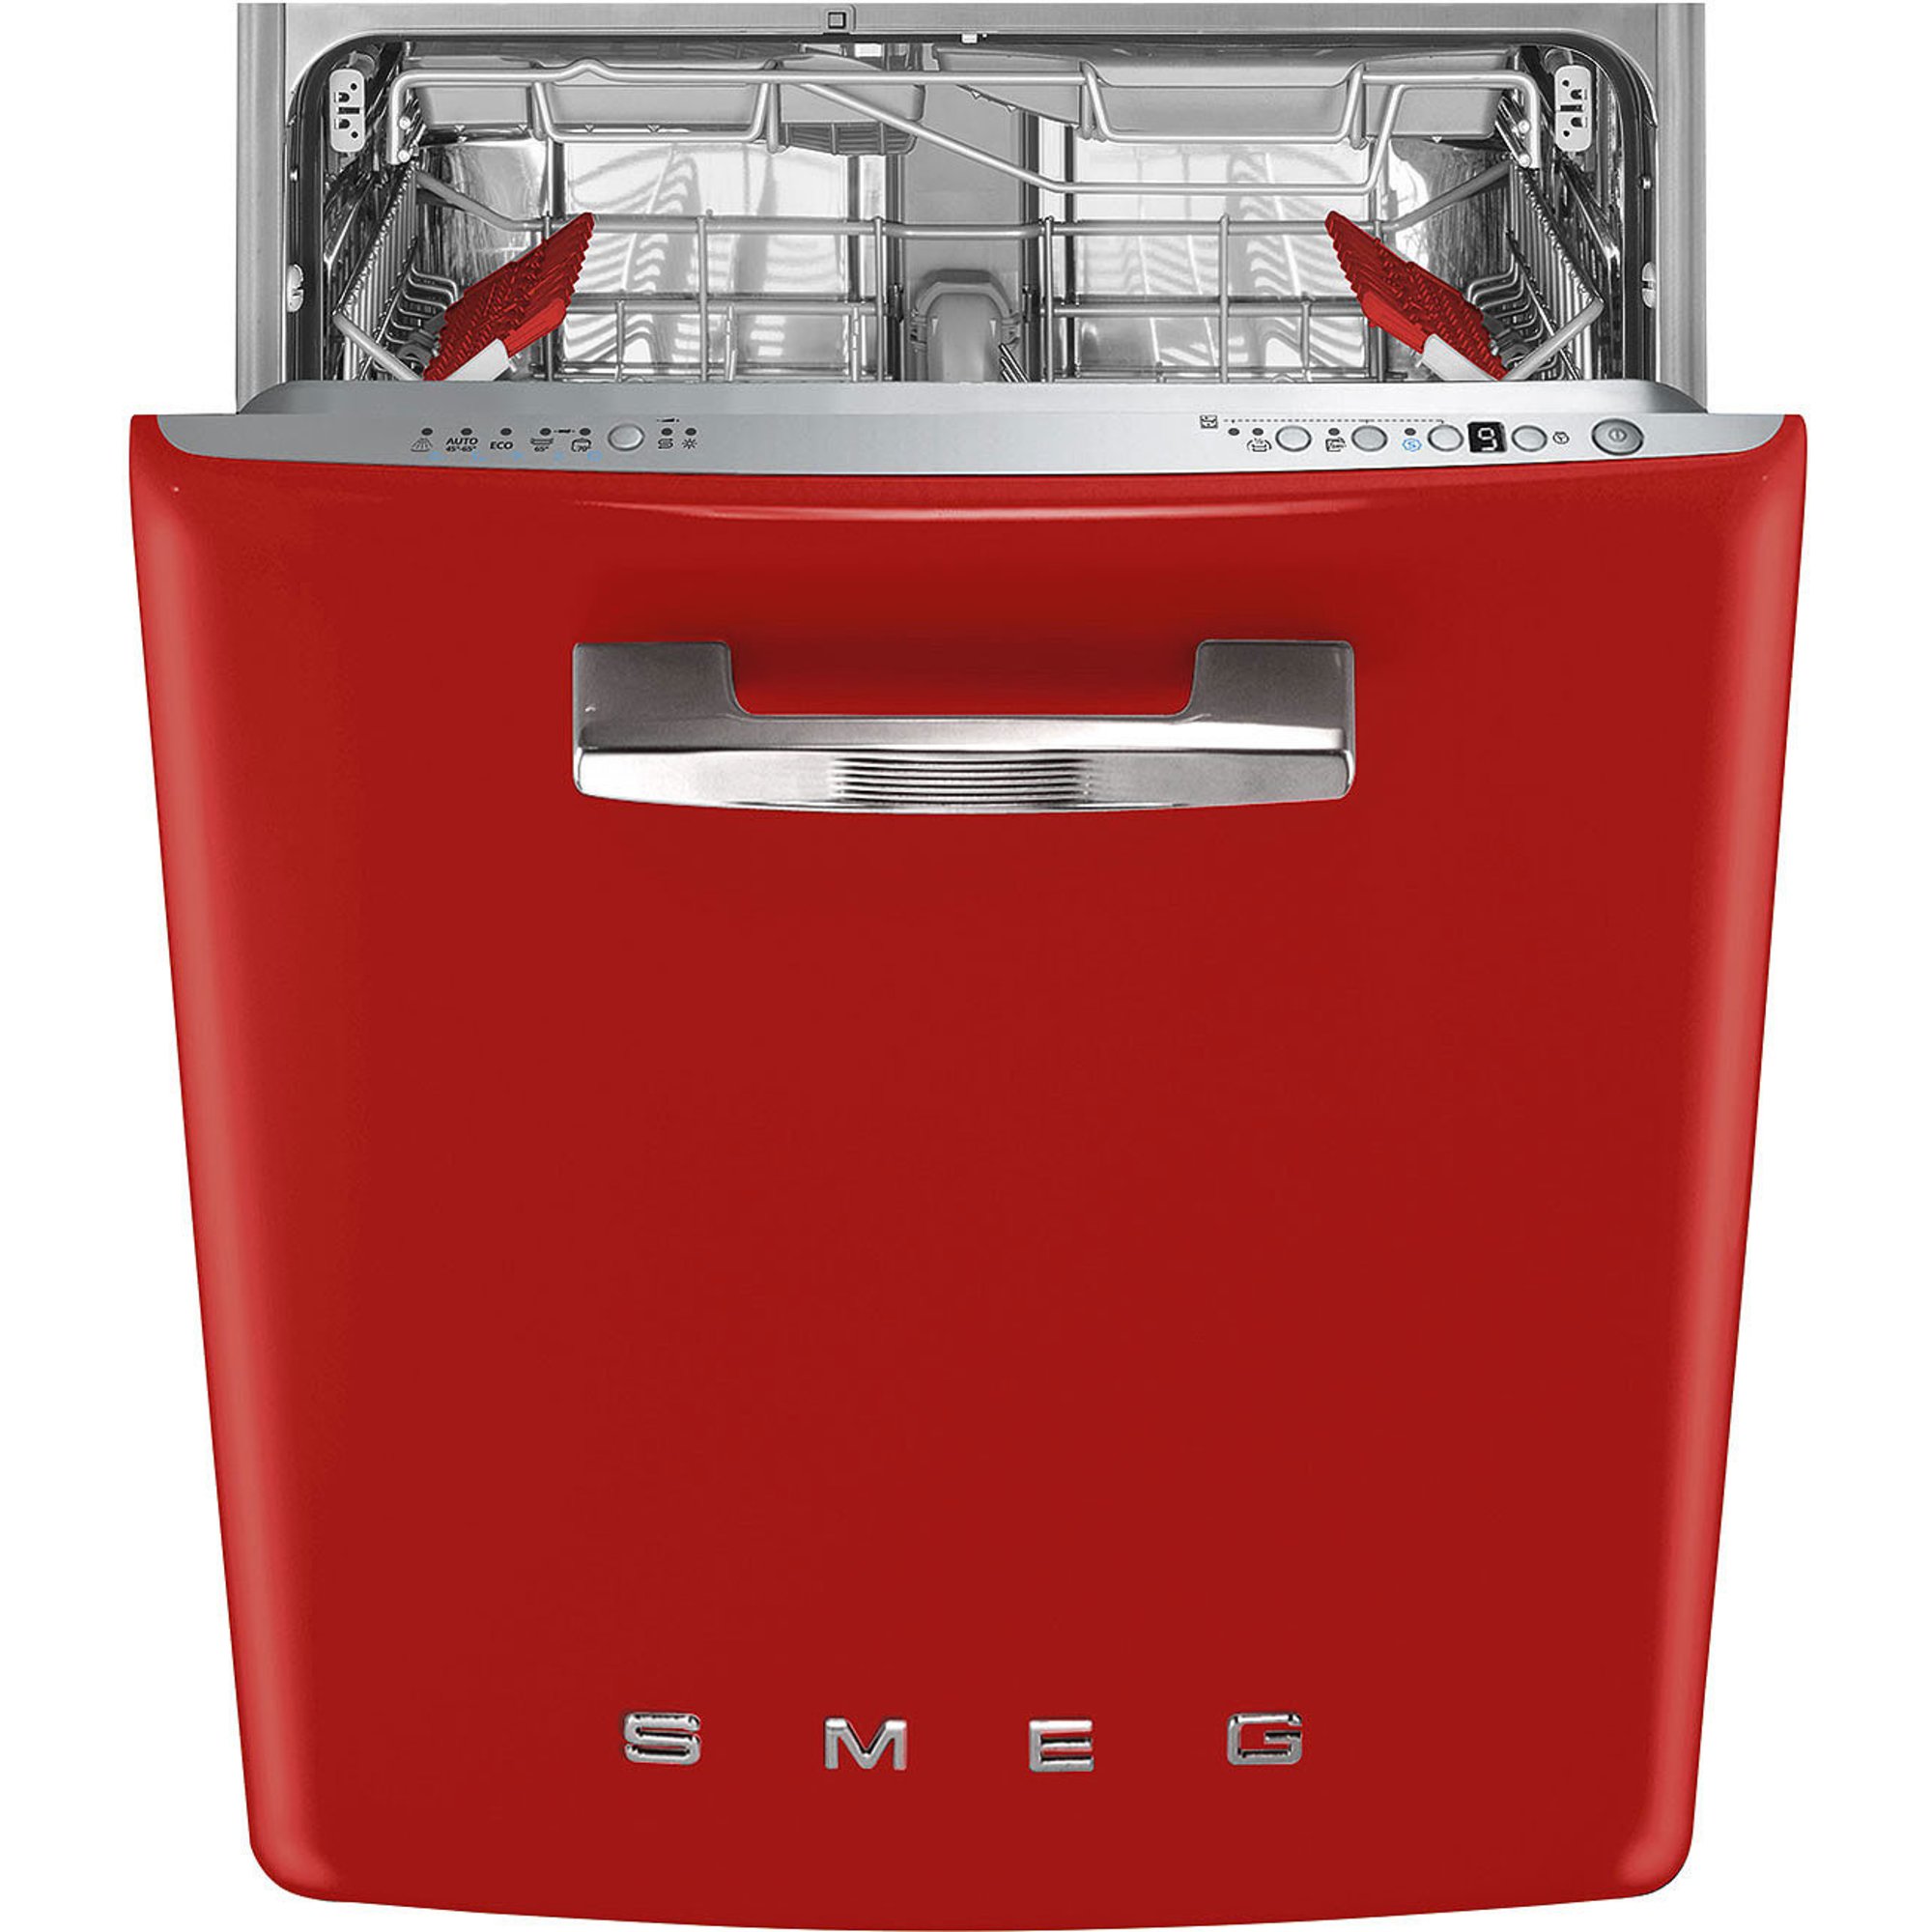 Billede af Smeg STFABRD3 opvaskemaskine til underbygning, rød